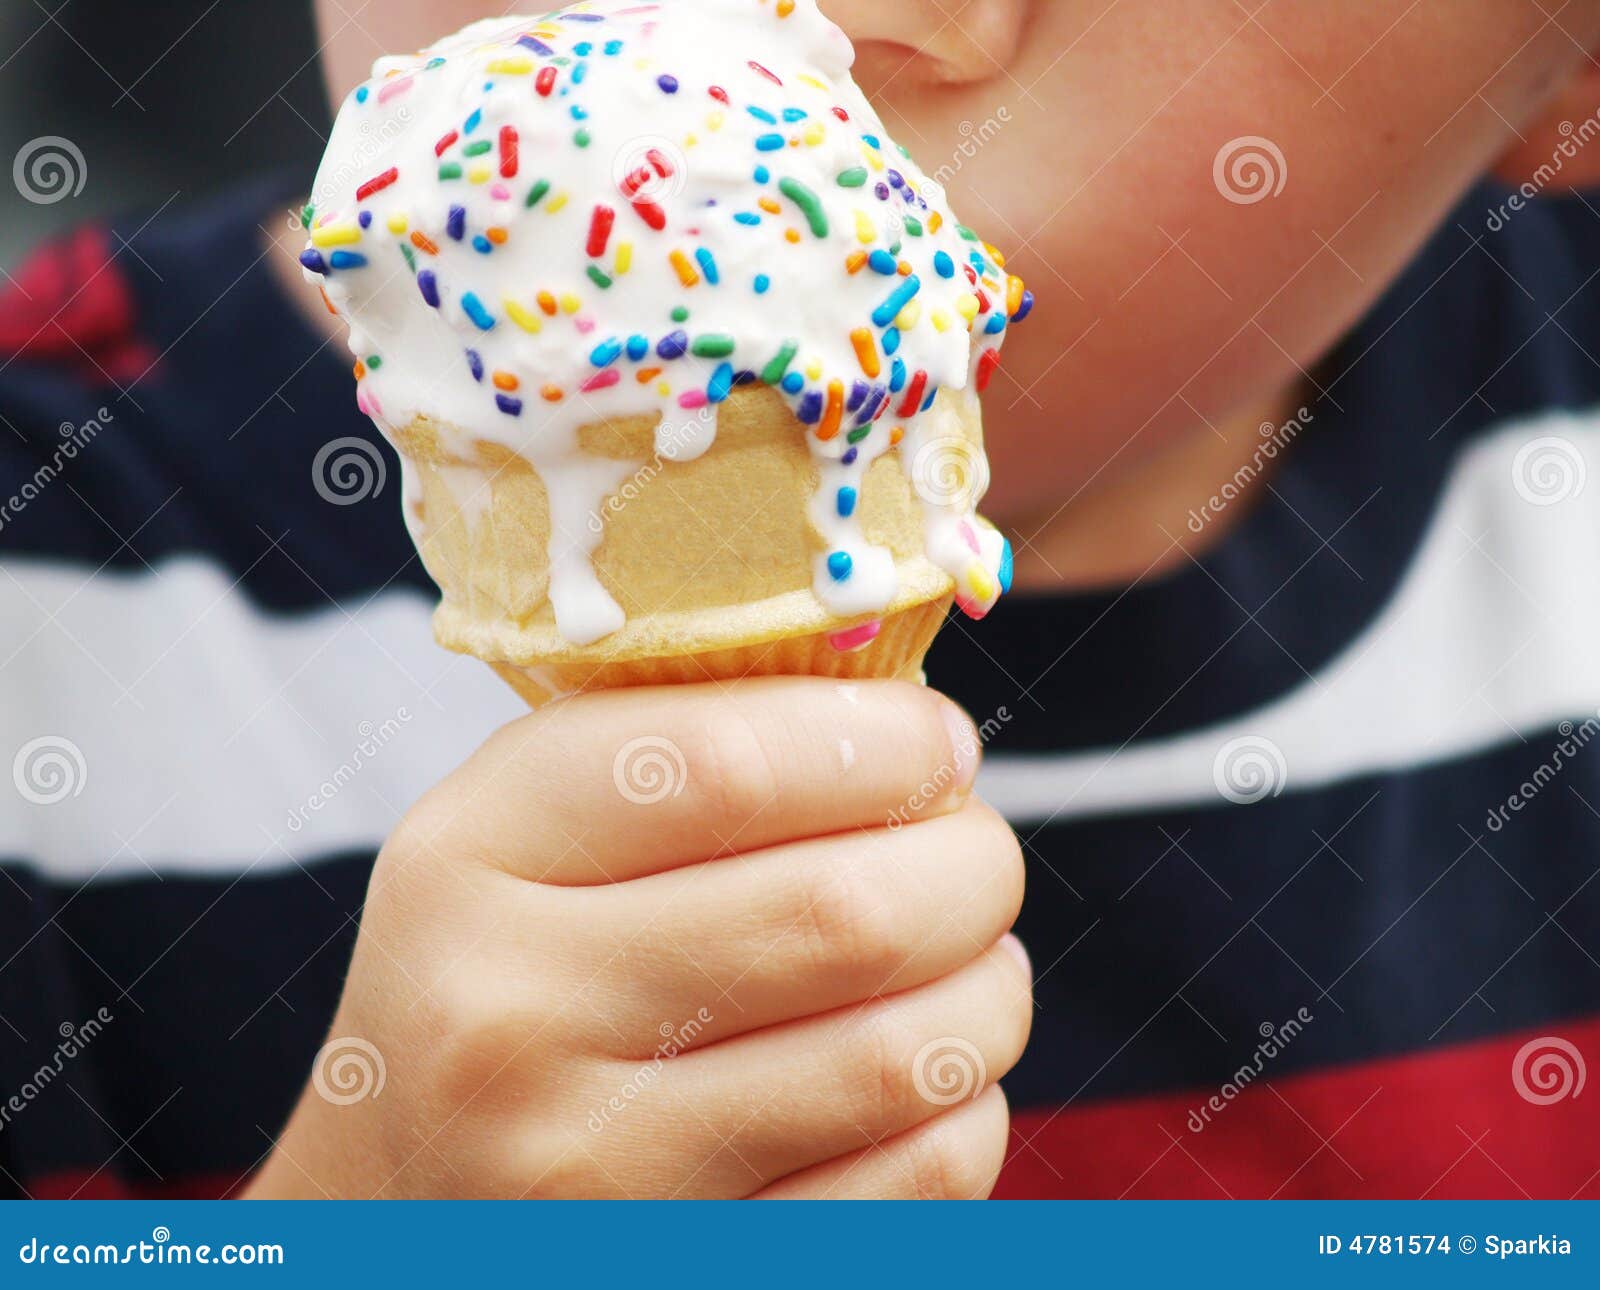 child's ice cream cone